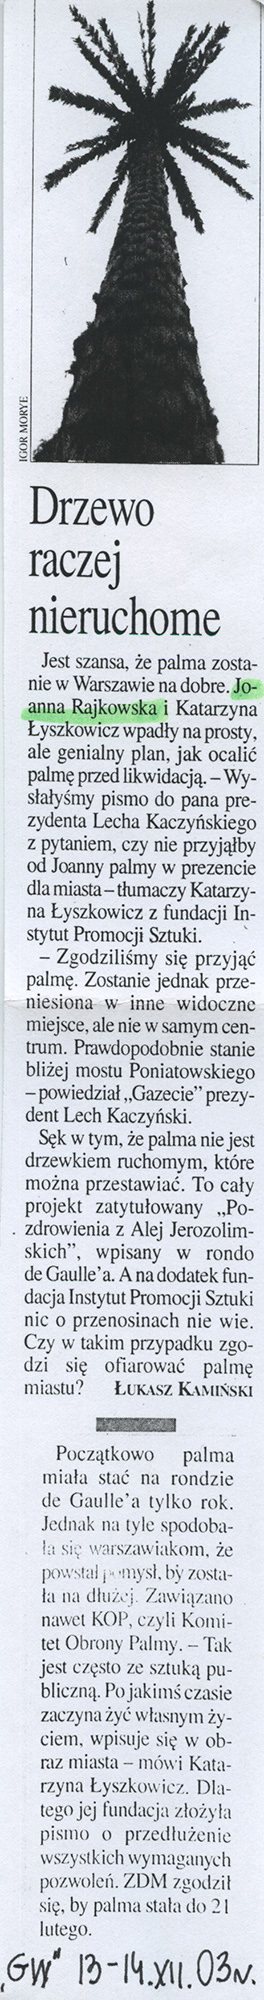 Łukasz Kamiński, Drzewo raczej nieruchome, „Gazeta Wyborcza“, 13-14.12.2003. 